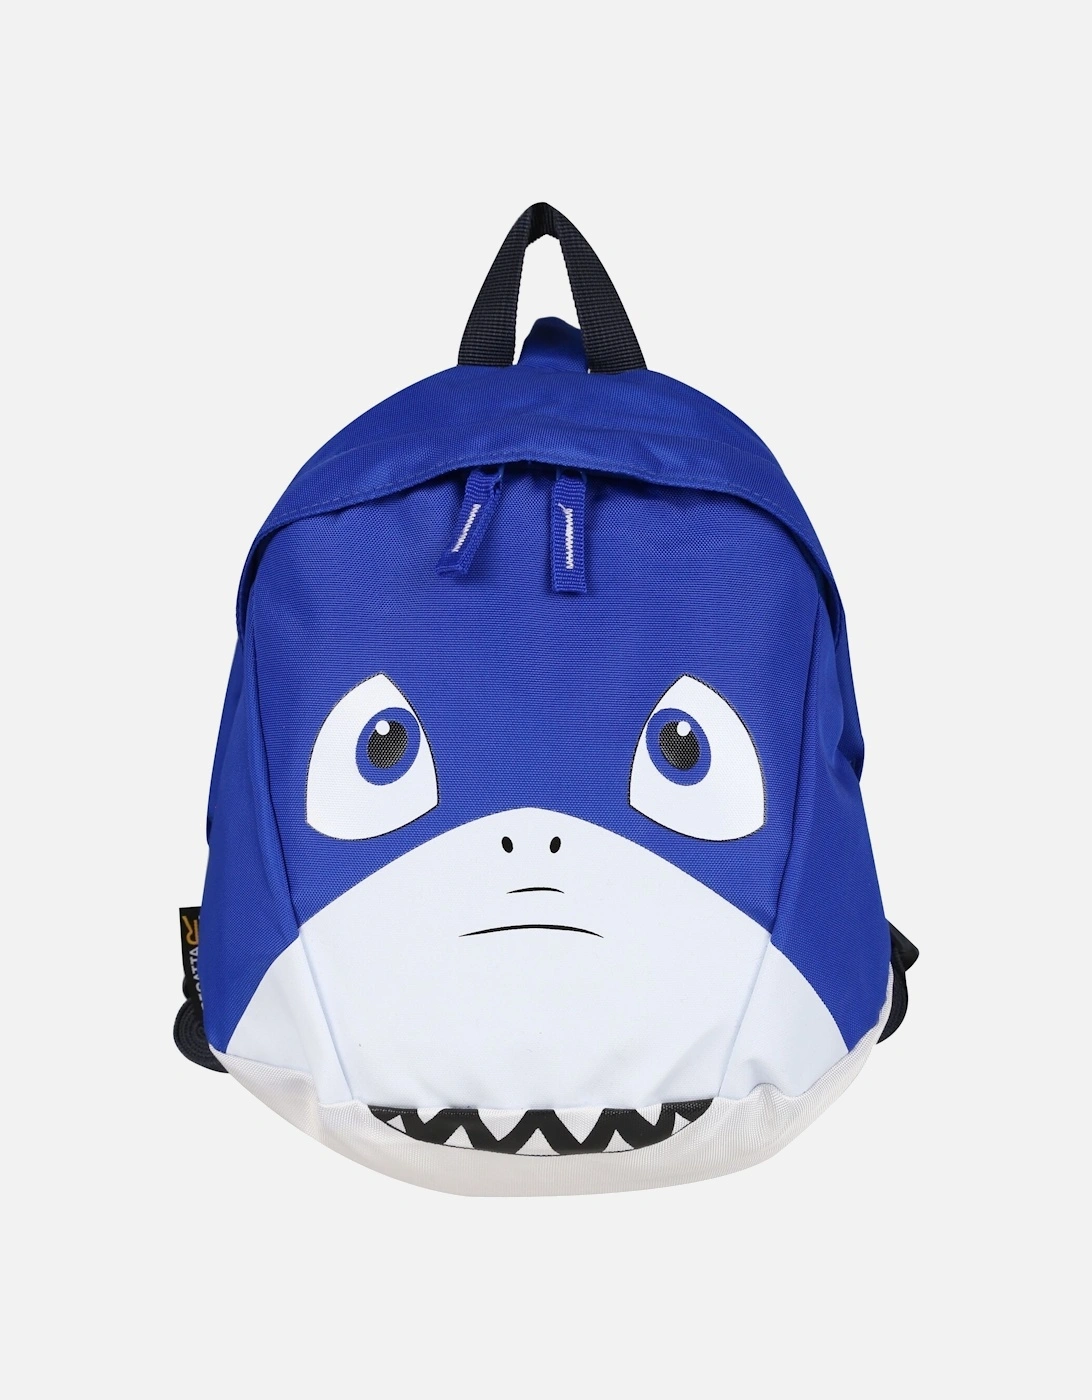 Childrens/Kids Roary Animal Shark Backpack, 5 of 4